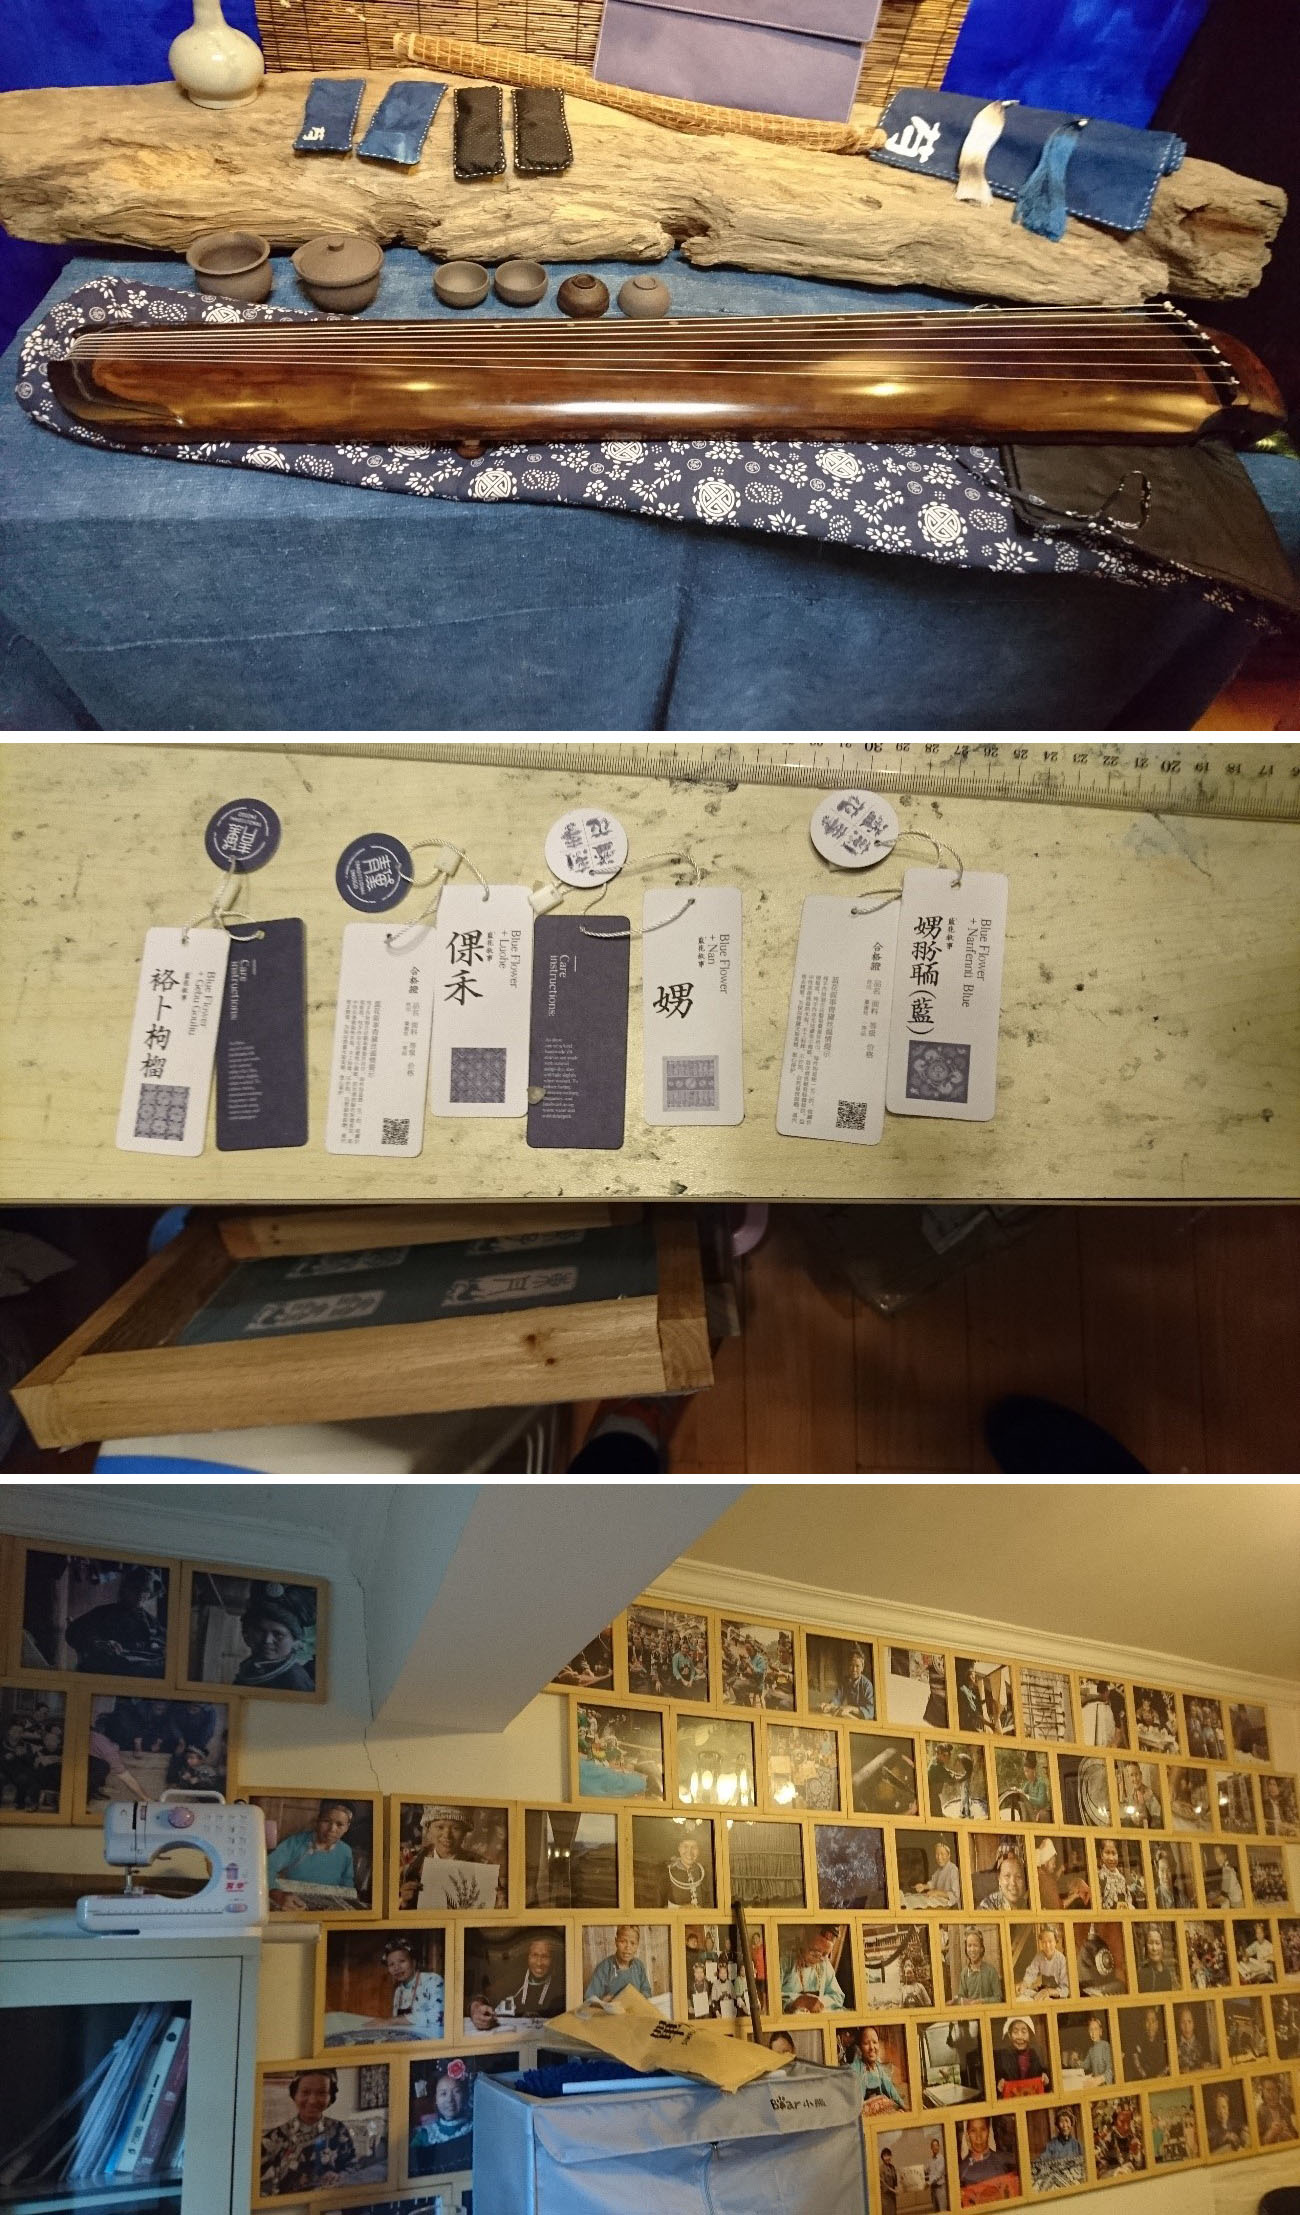 写真2　（上）：貴州九木和集文化伝播有限公司で商品開発された木琴のカバー。木琴は漢族が使うものであるが、カバーにはミャオ族の藍染模様の布地が使われている。（中）：同公司の商品に付けられたタグ。作品と制作者の説明が書かれている。（下）：同公司の工房に飾られた花旗貴州手工業発展プロジェクトに参加したミャオ族の人々の写真